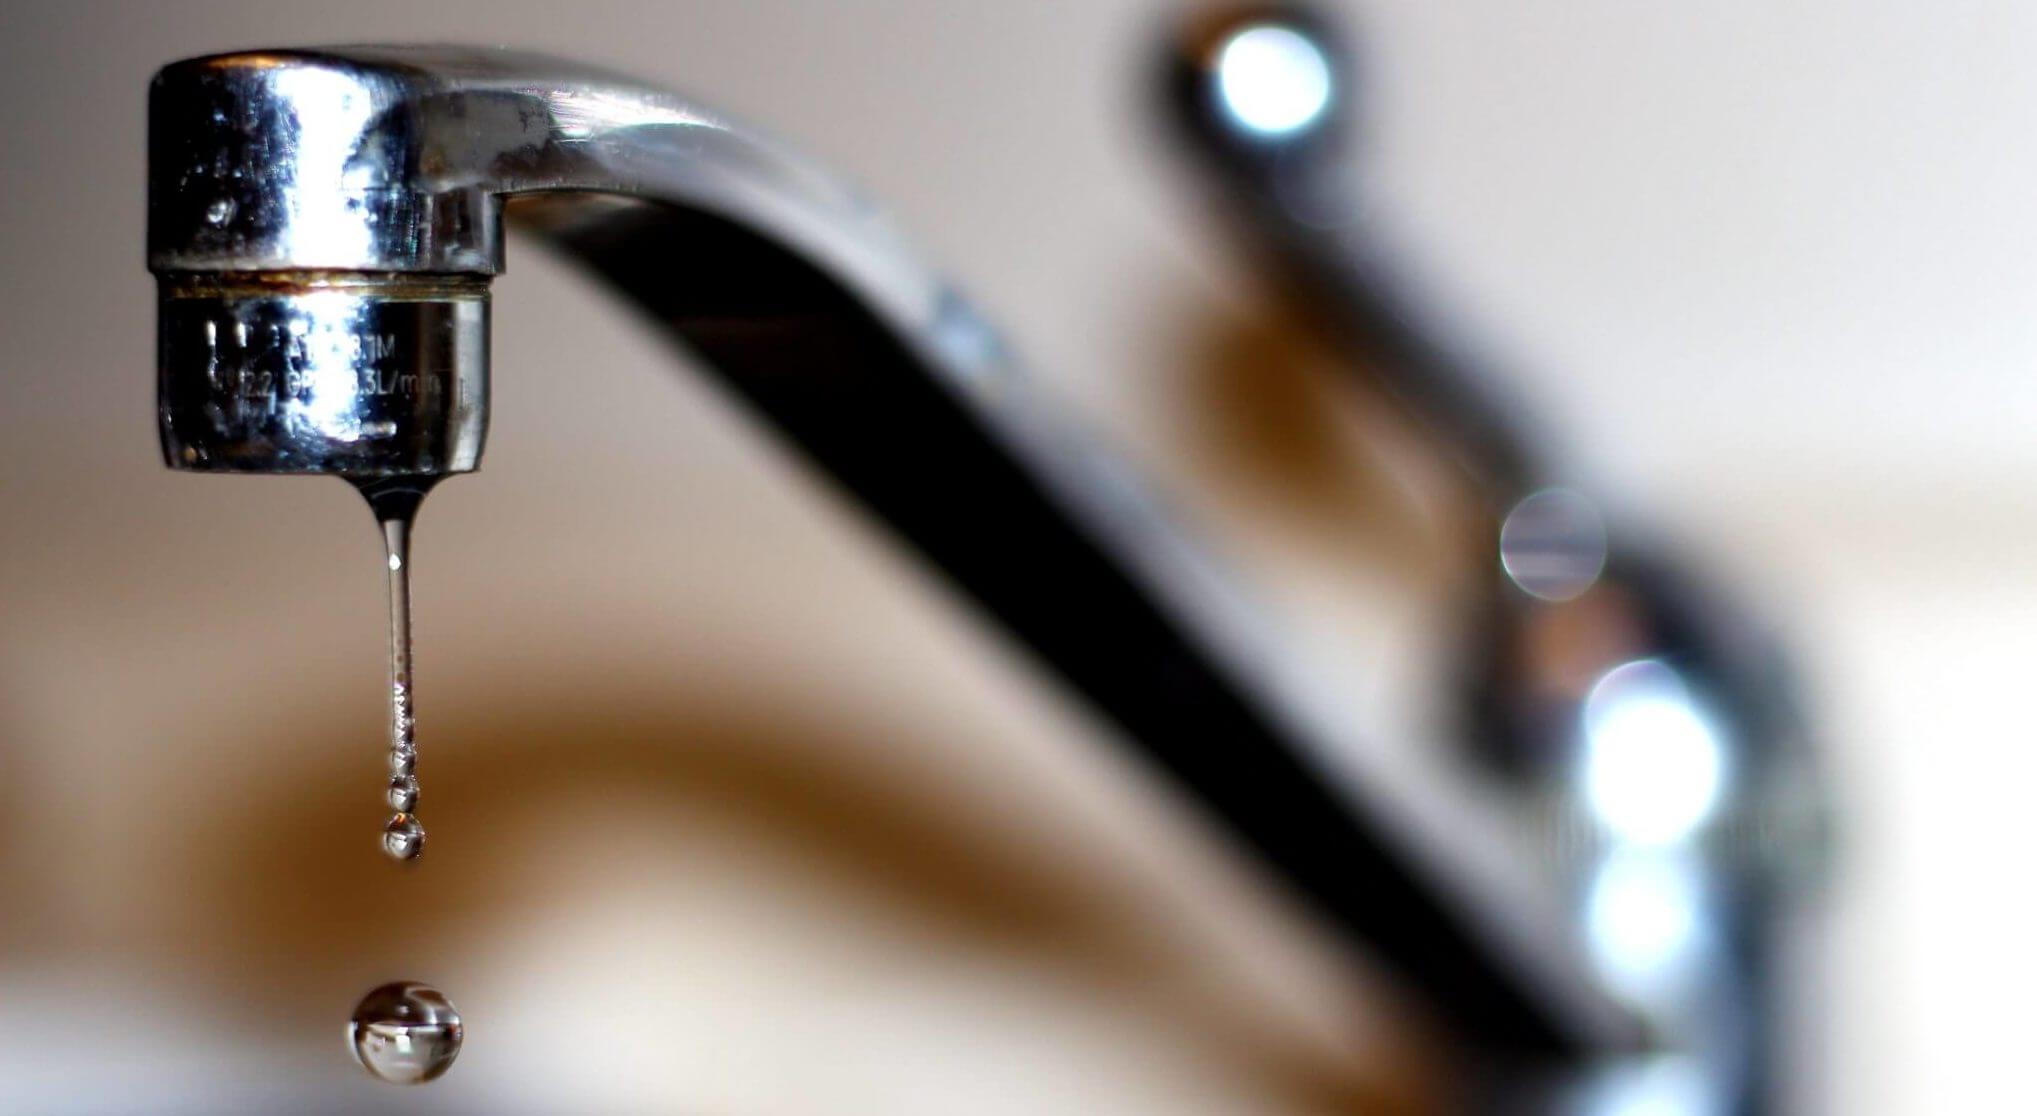 help fixing leaking bathroom sink faucet